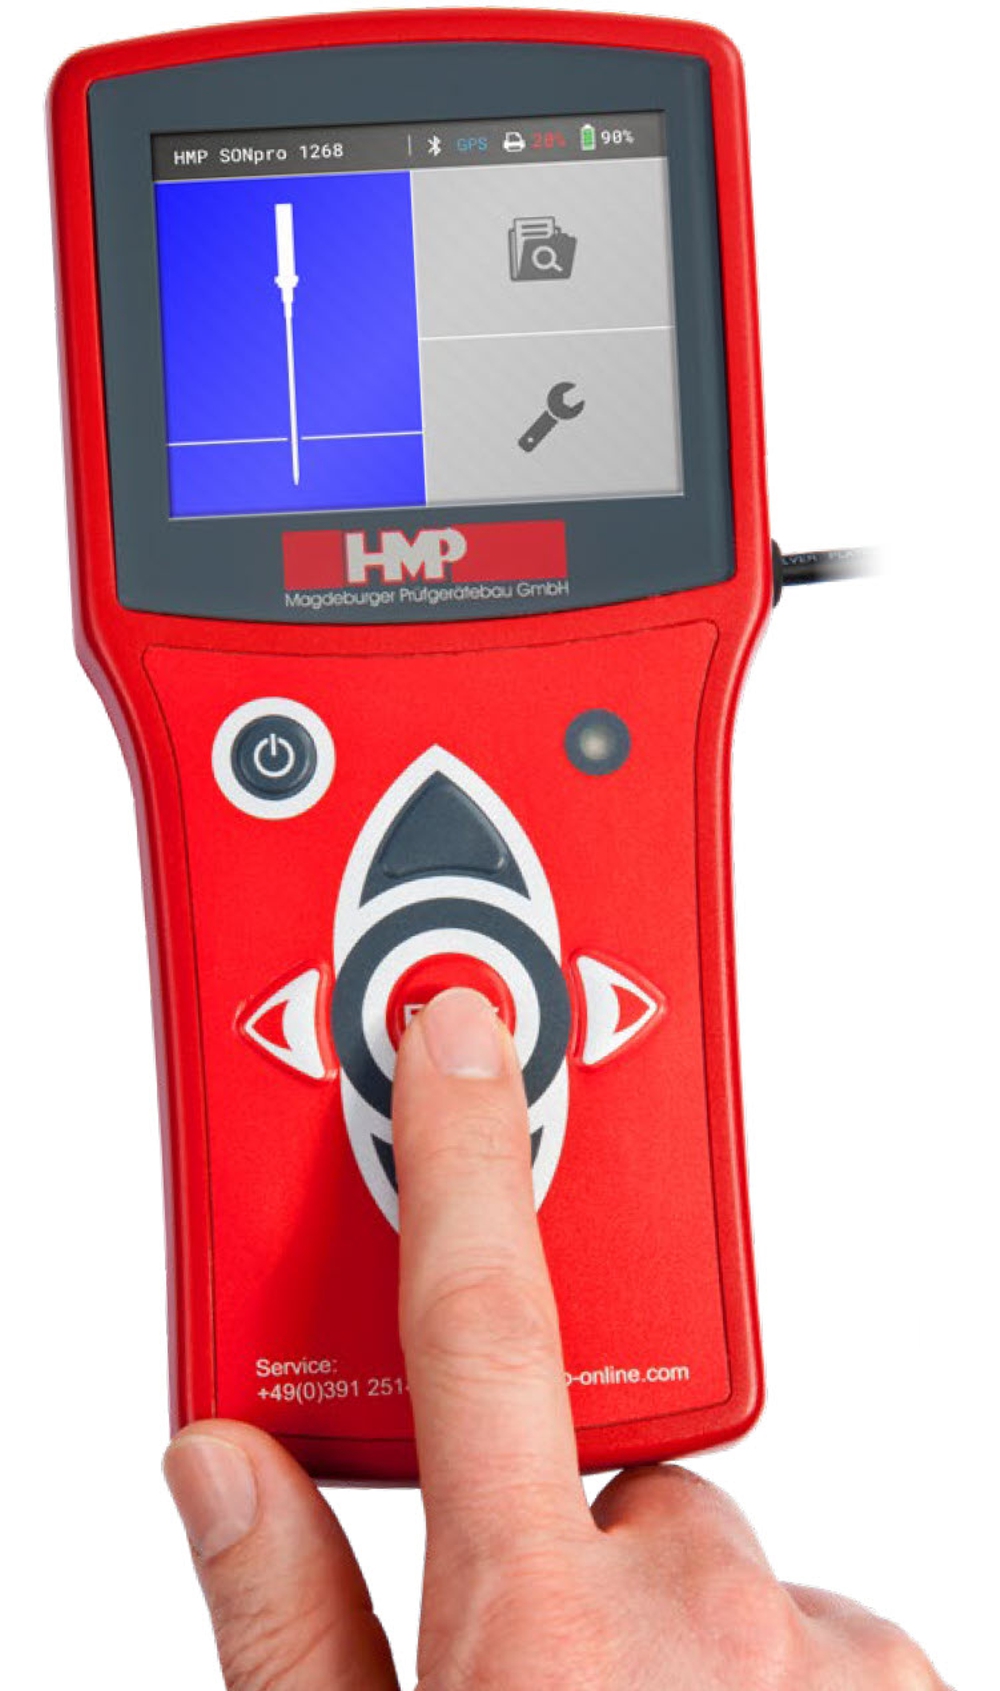 HMP SONpro - Anzeigegerät Start Fingertip - Rammsondierung Erfassunf und Auswertung mit intuitiver Bedienung